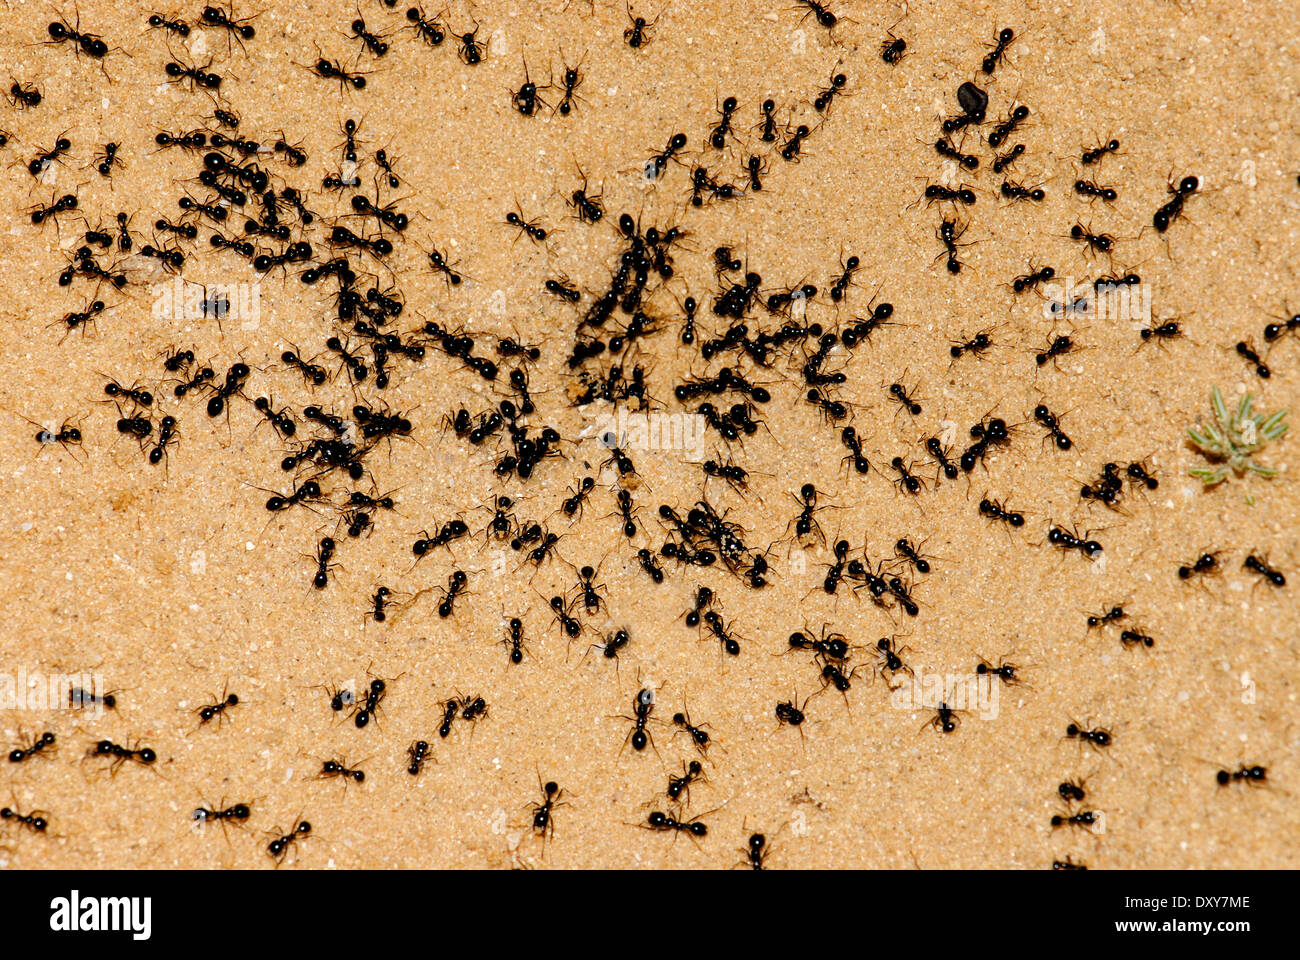 Ants colony Stock Photo